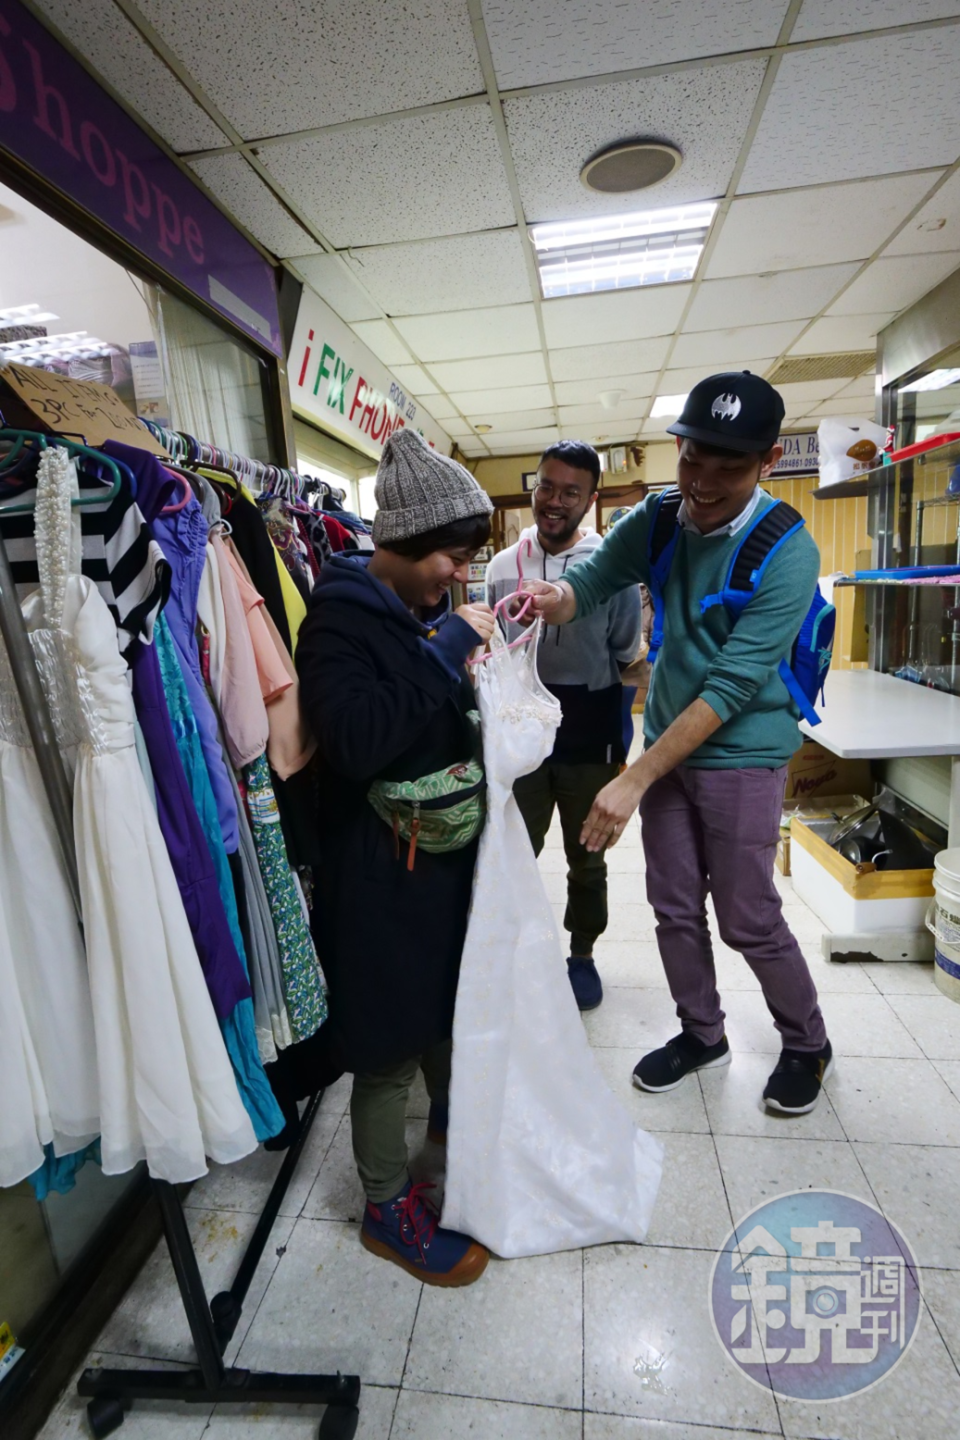 許多店鋪專賣二手衣，有品牌的衣服，價格相對便宜，也受到菲律賓人喜愛。